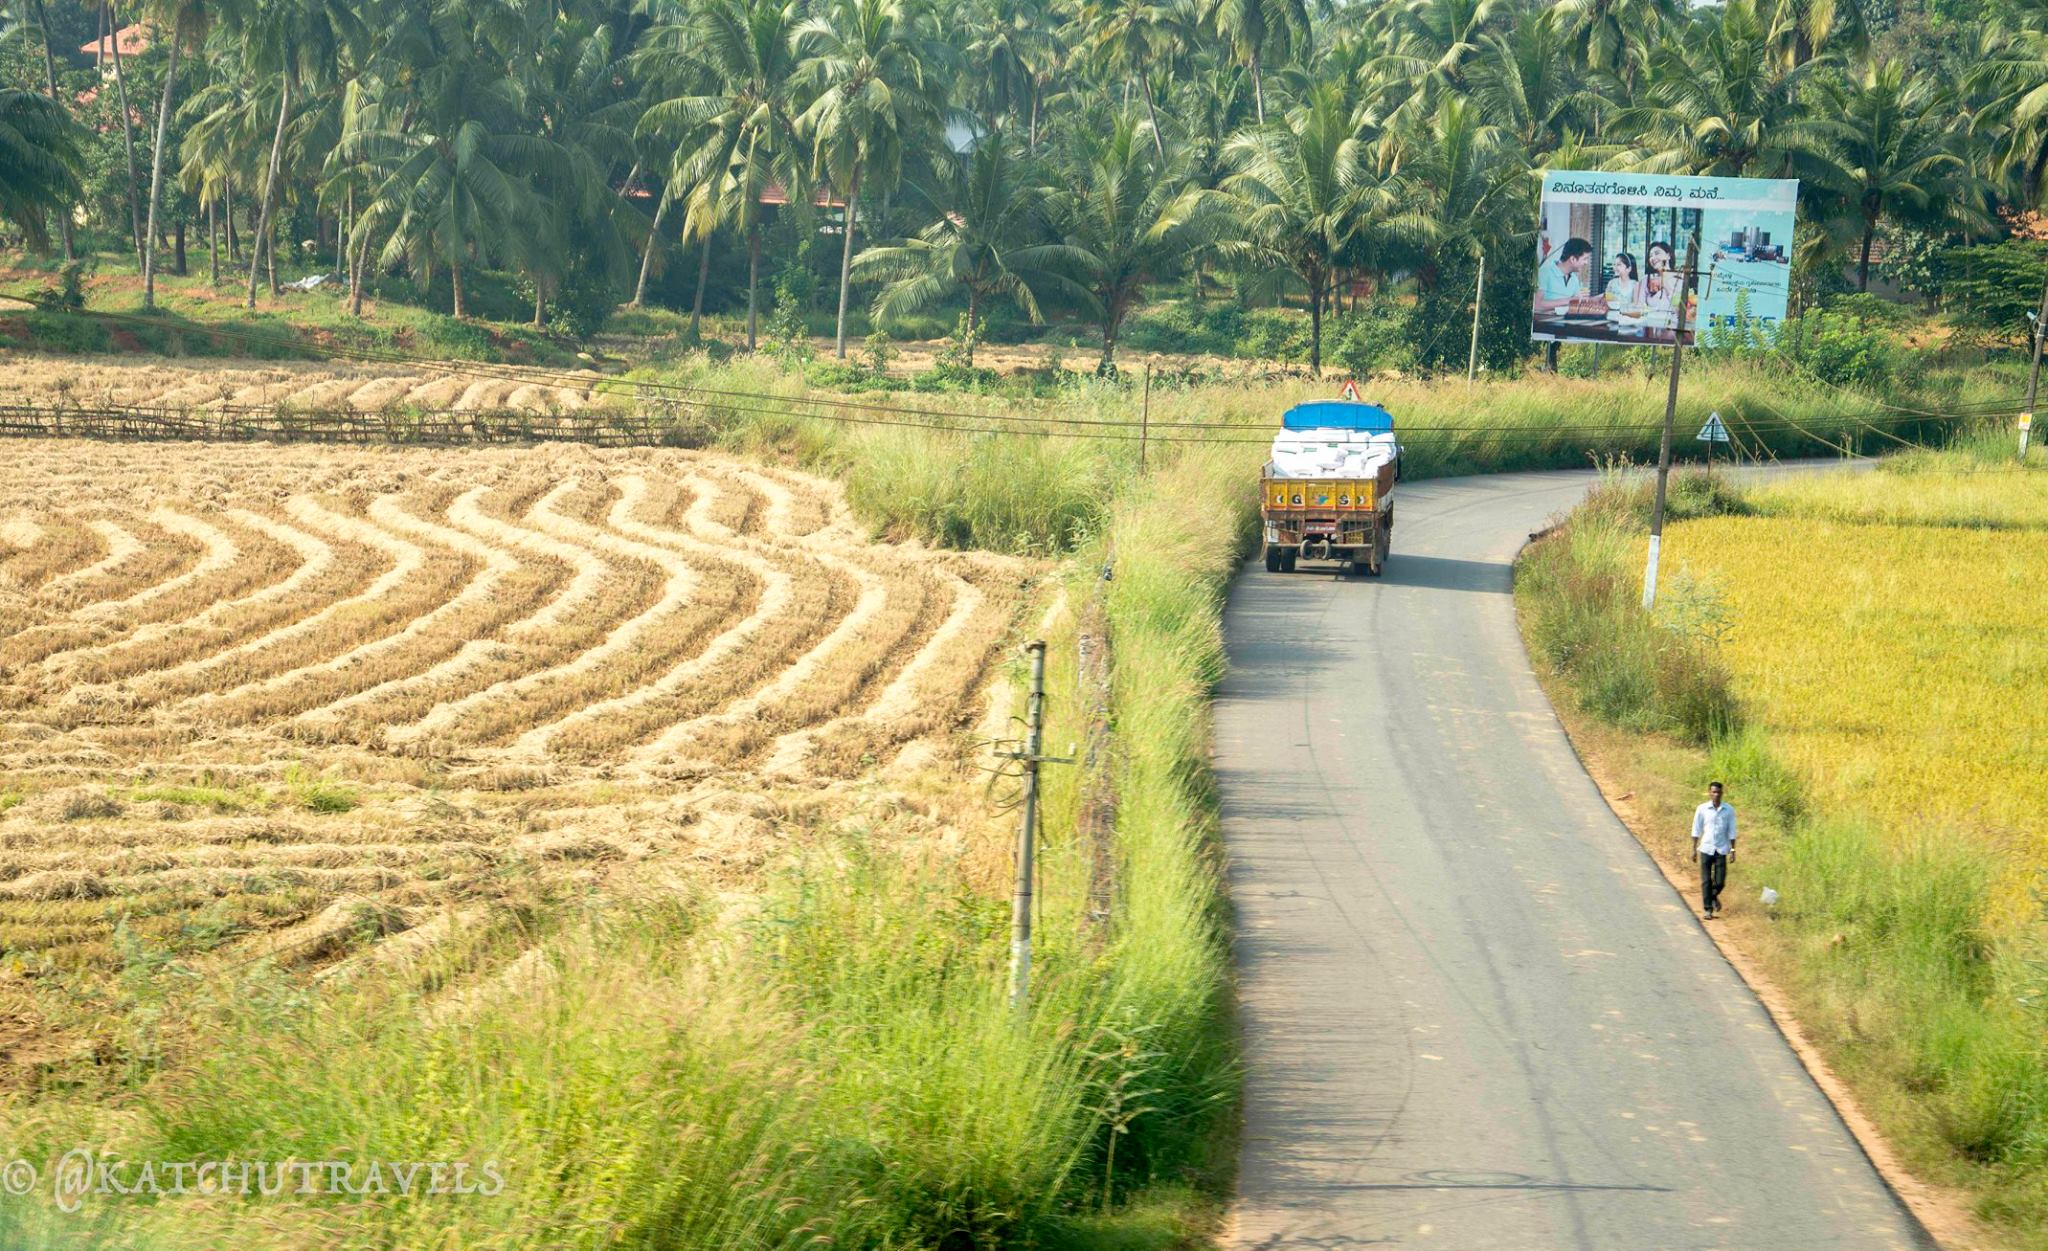 Scenic Rural Roads by the railway track in Karnataka